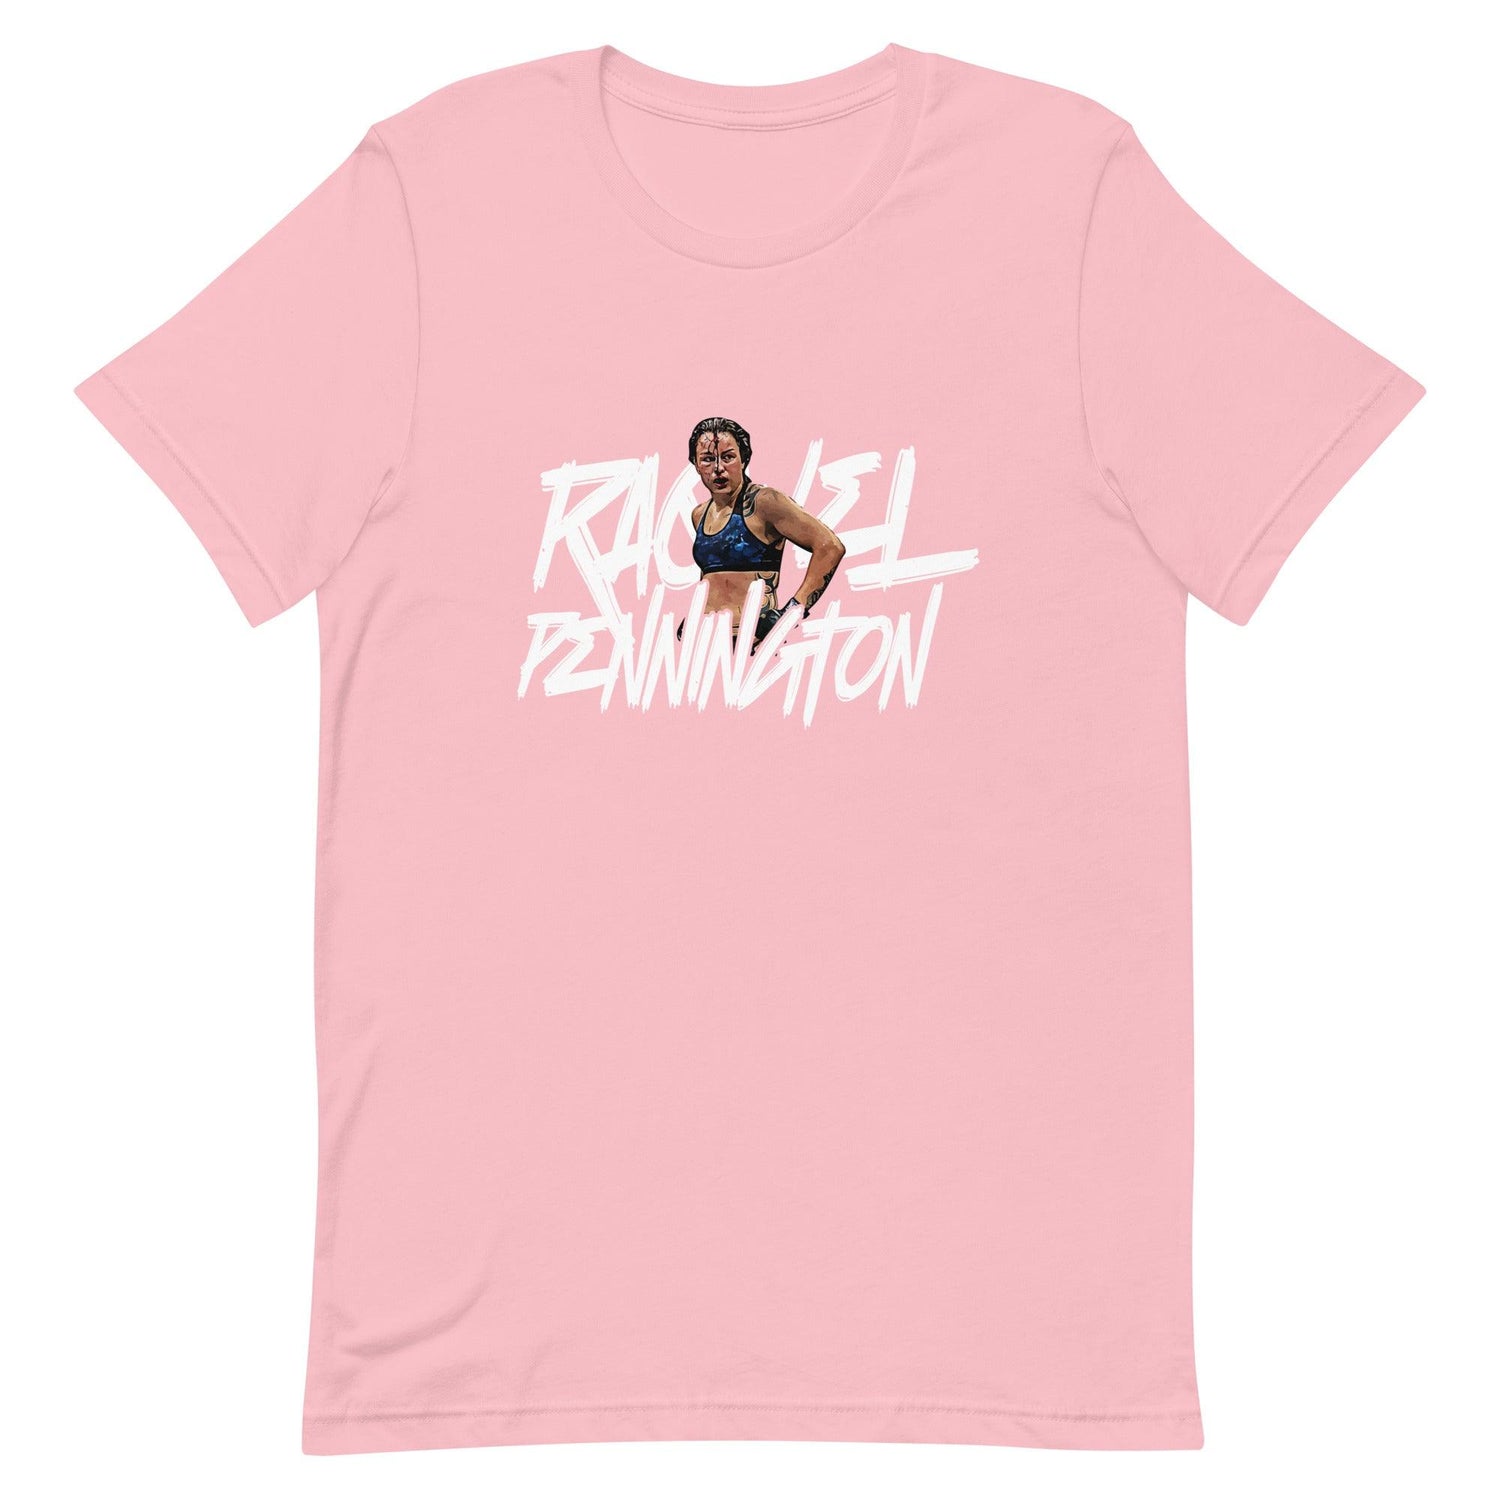 Raquel Pennington "War" t-shirt - Fan Arch